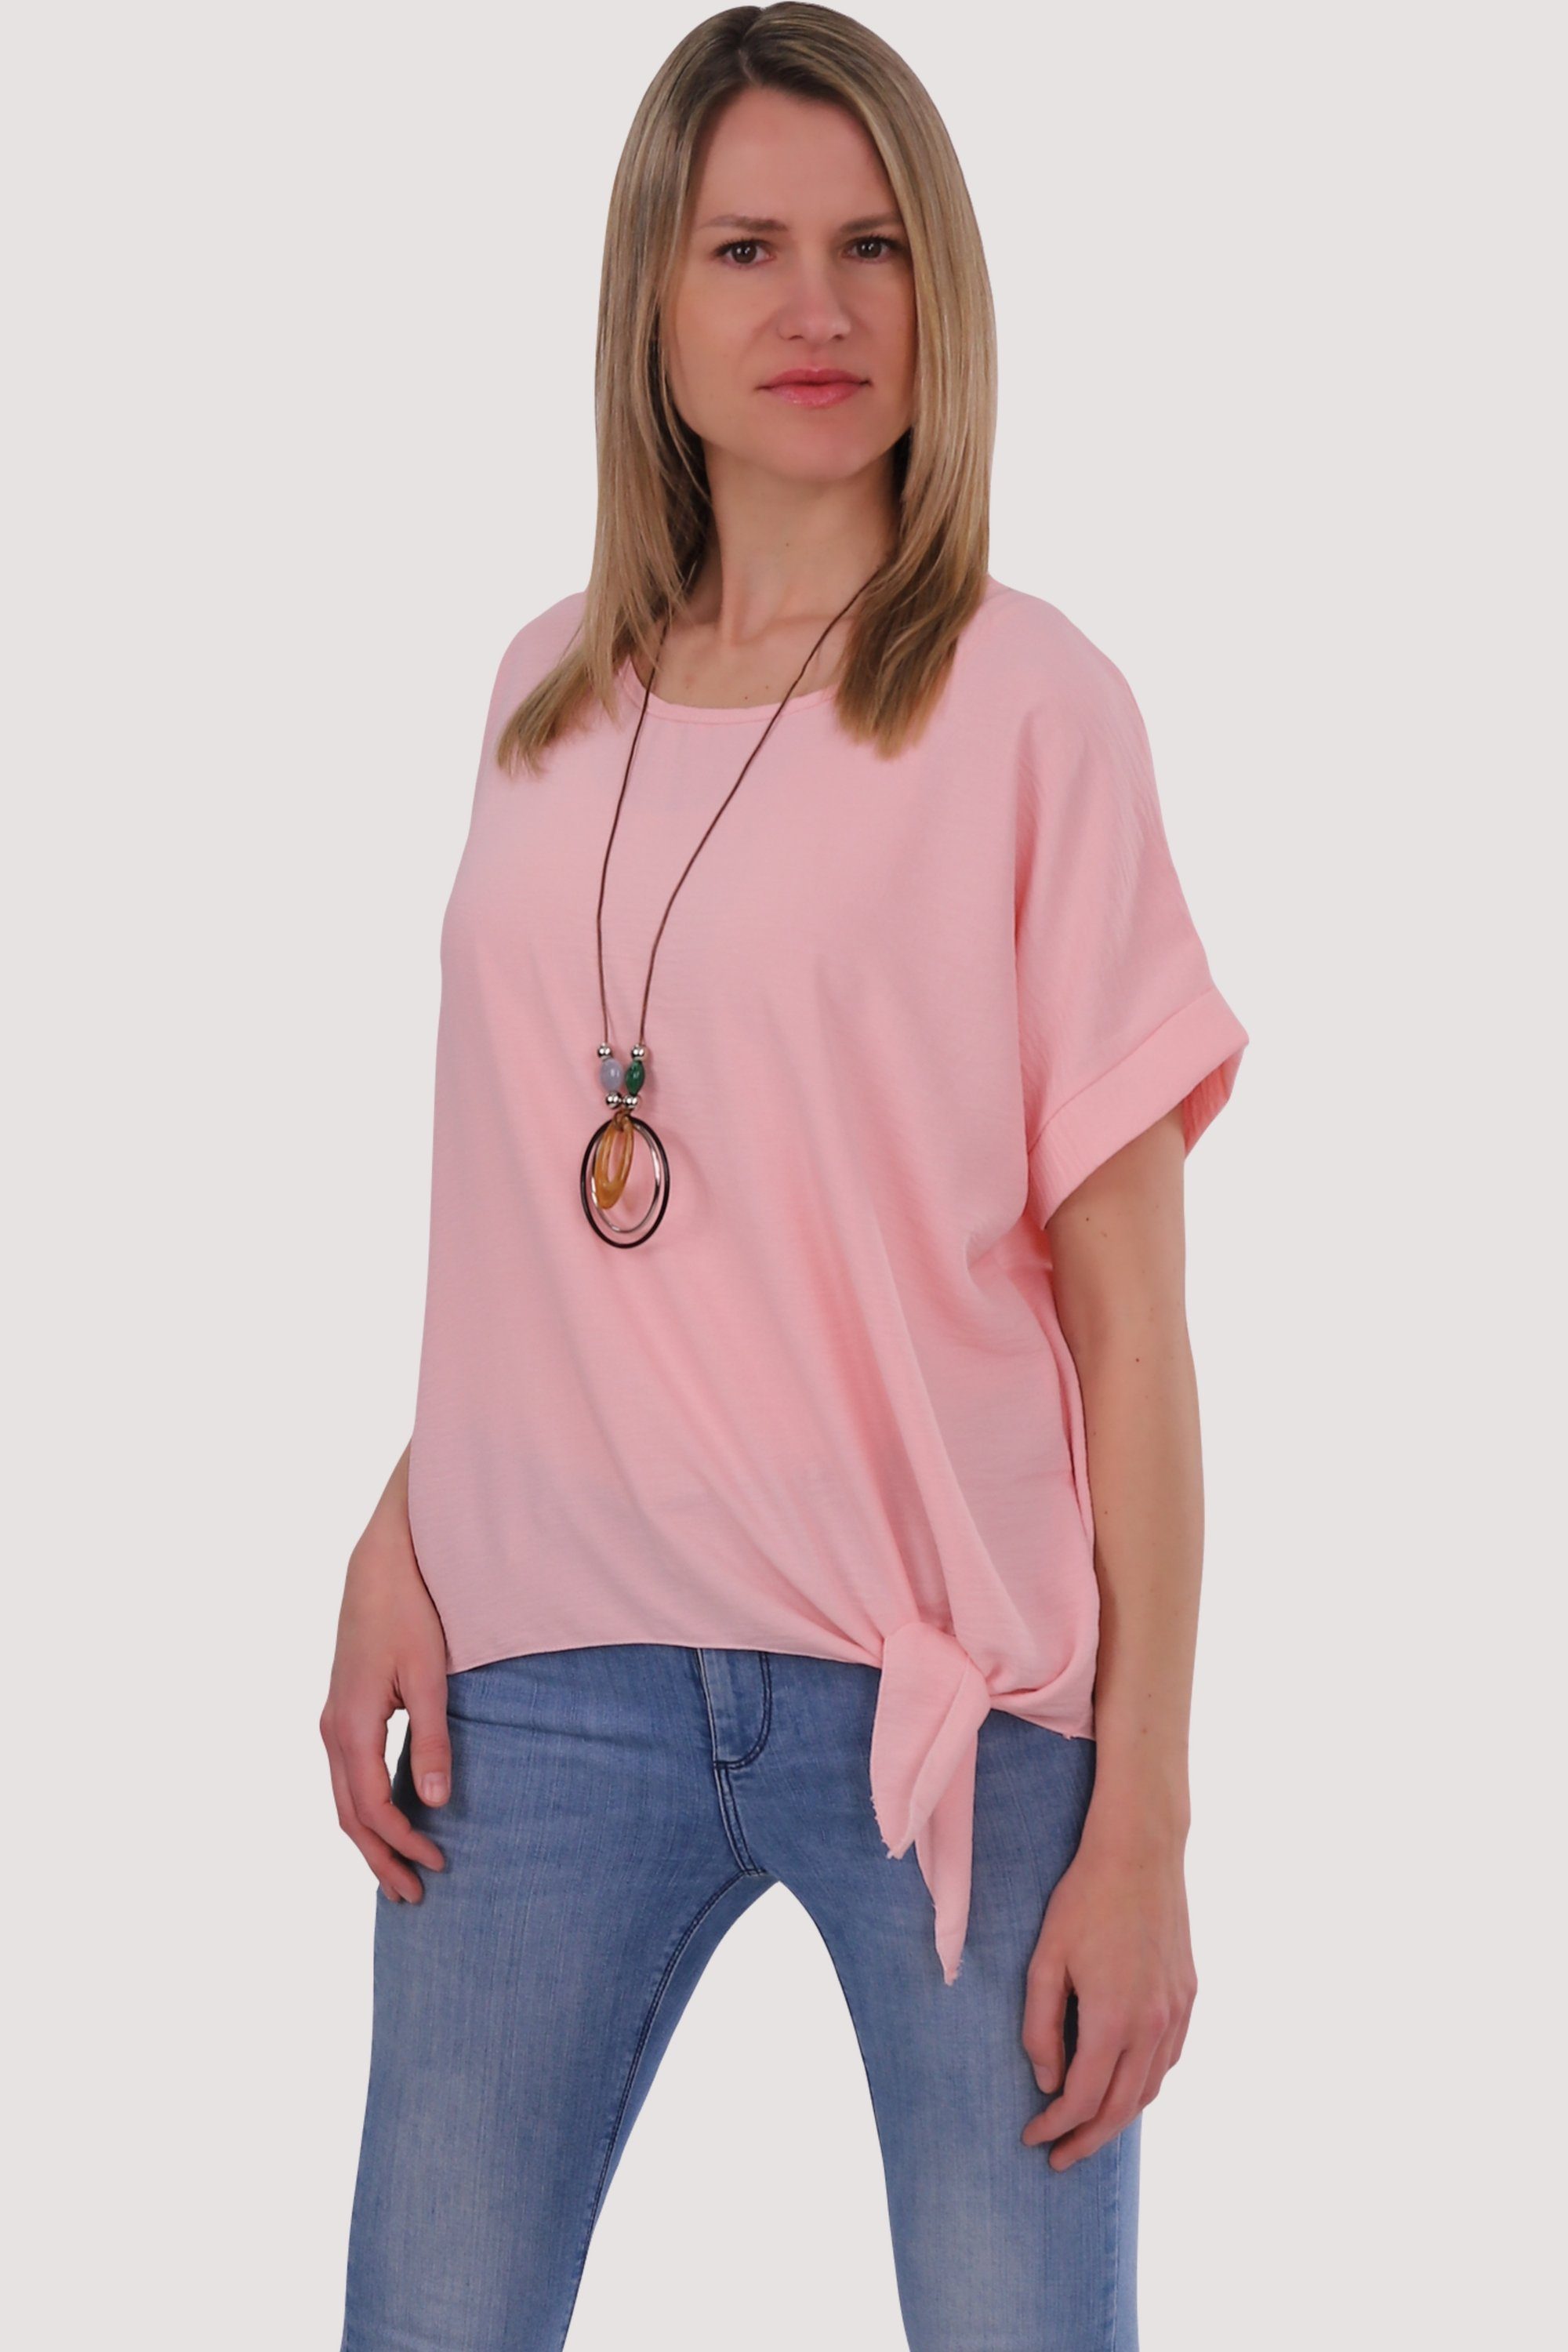 fashion malito Bindeknoten und rosa Blusenshirt 10508 Einheitsgröße mit than Kette more